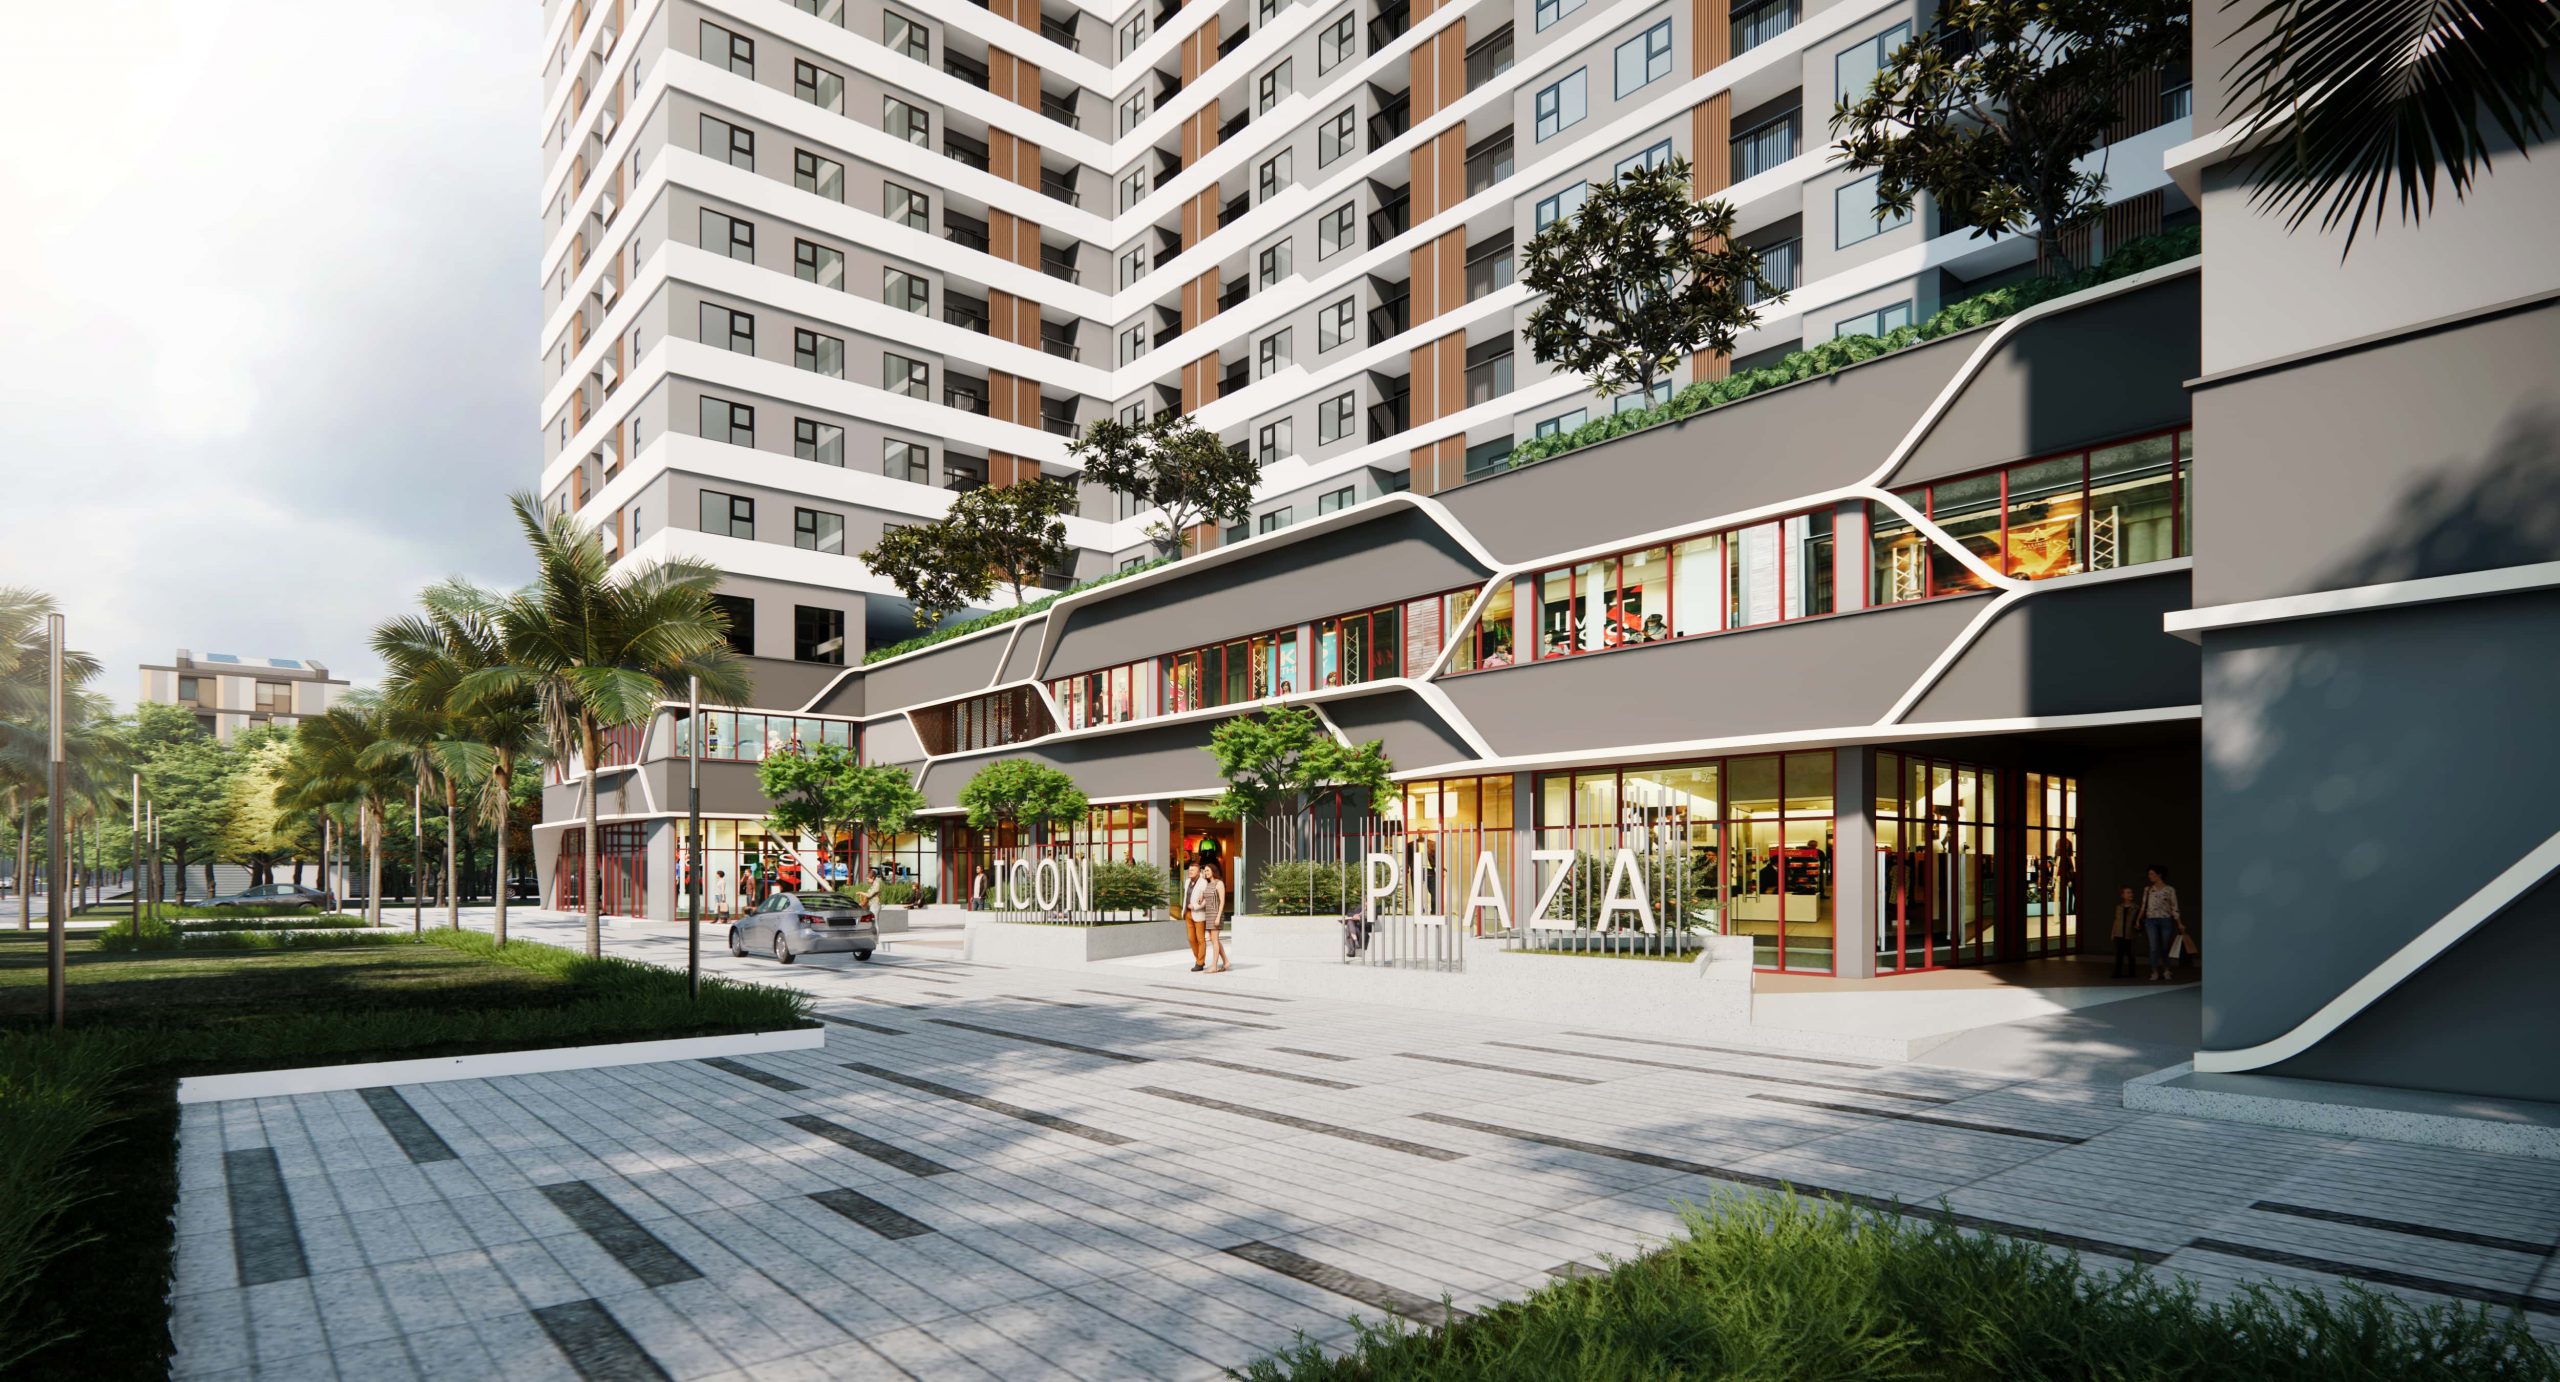 Icon Plaza là một dự án căn hộ chung cư cao cấp của Công ty Danh Việt Group